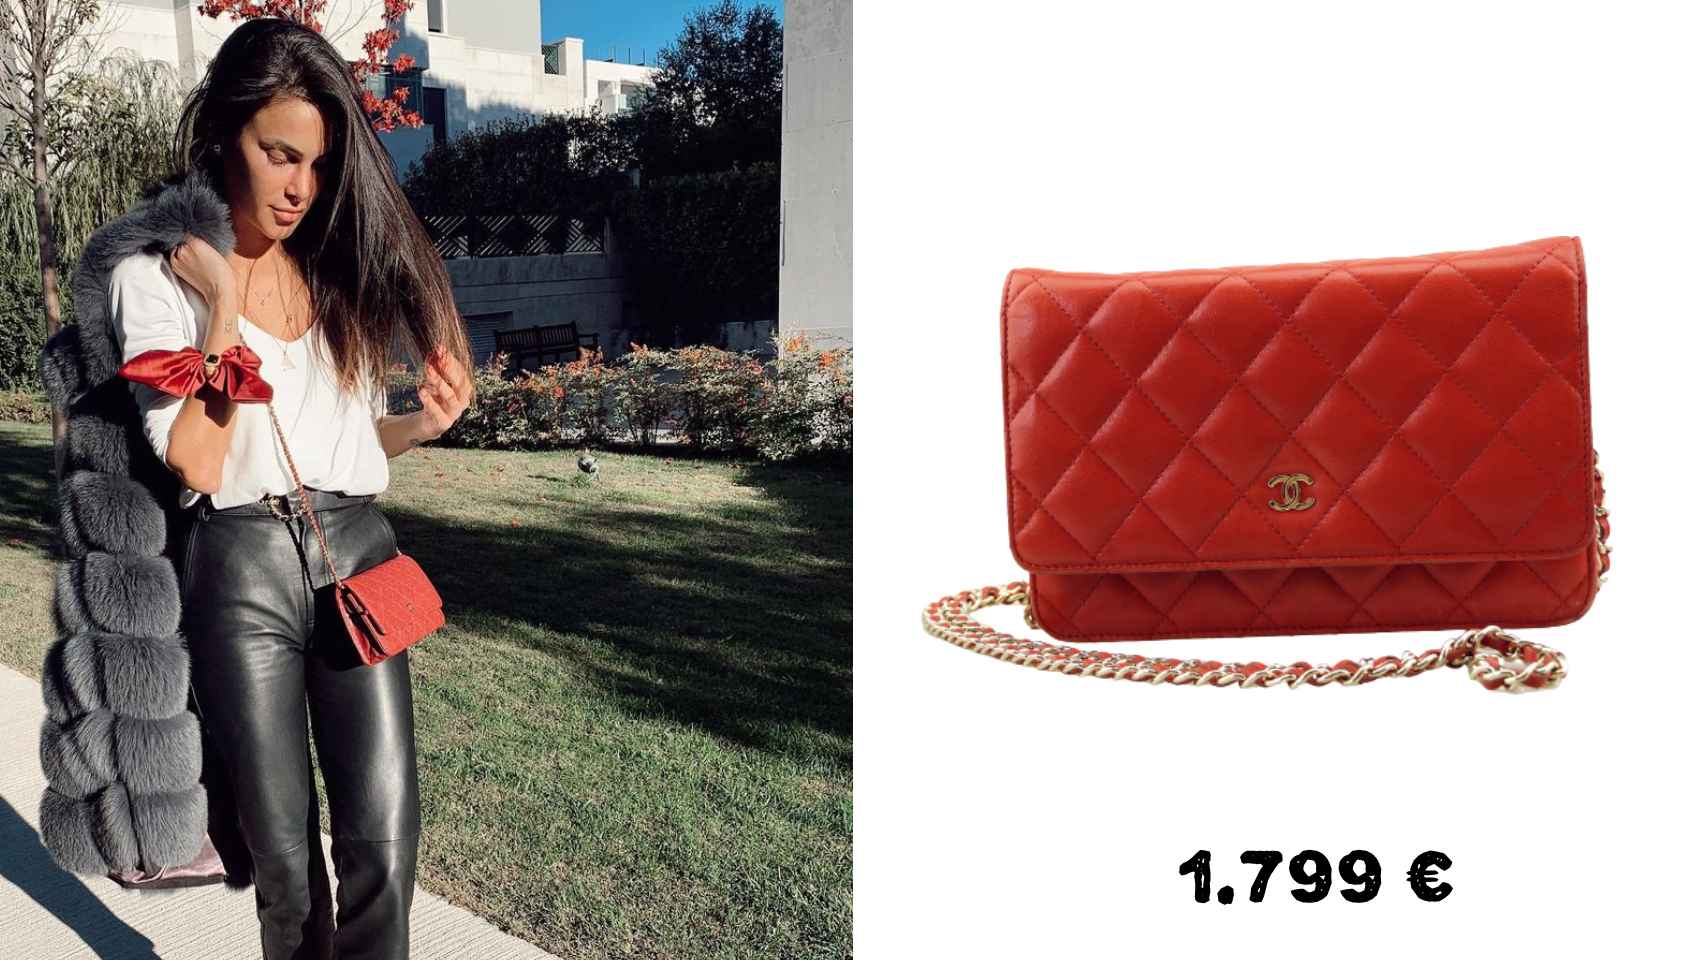 La doctora Barber con un bolso de Chanel que costaba 1.799 euros pero ahora puede encontrarse por la mitad.